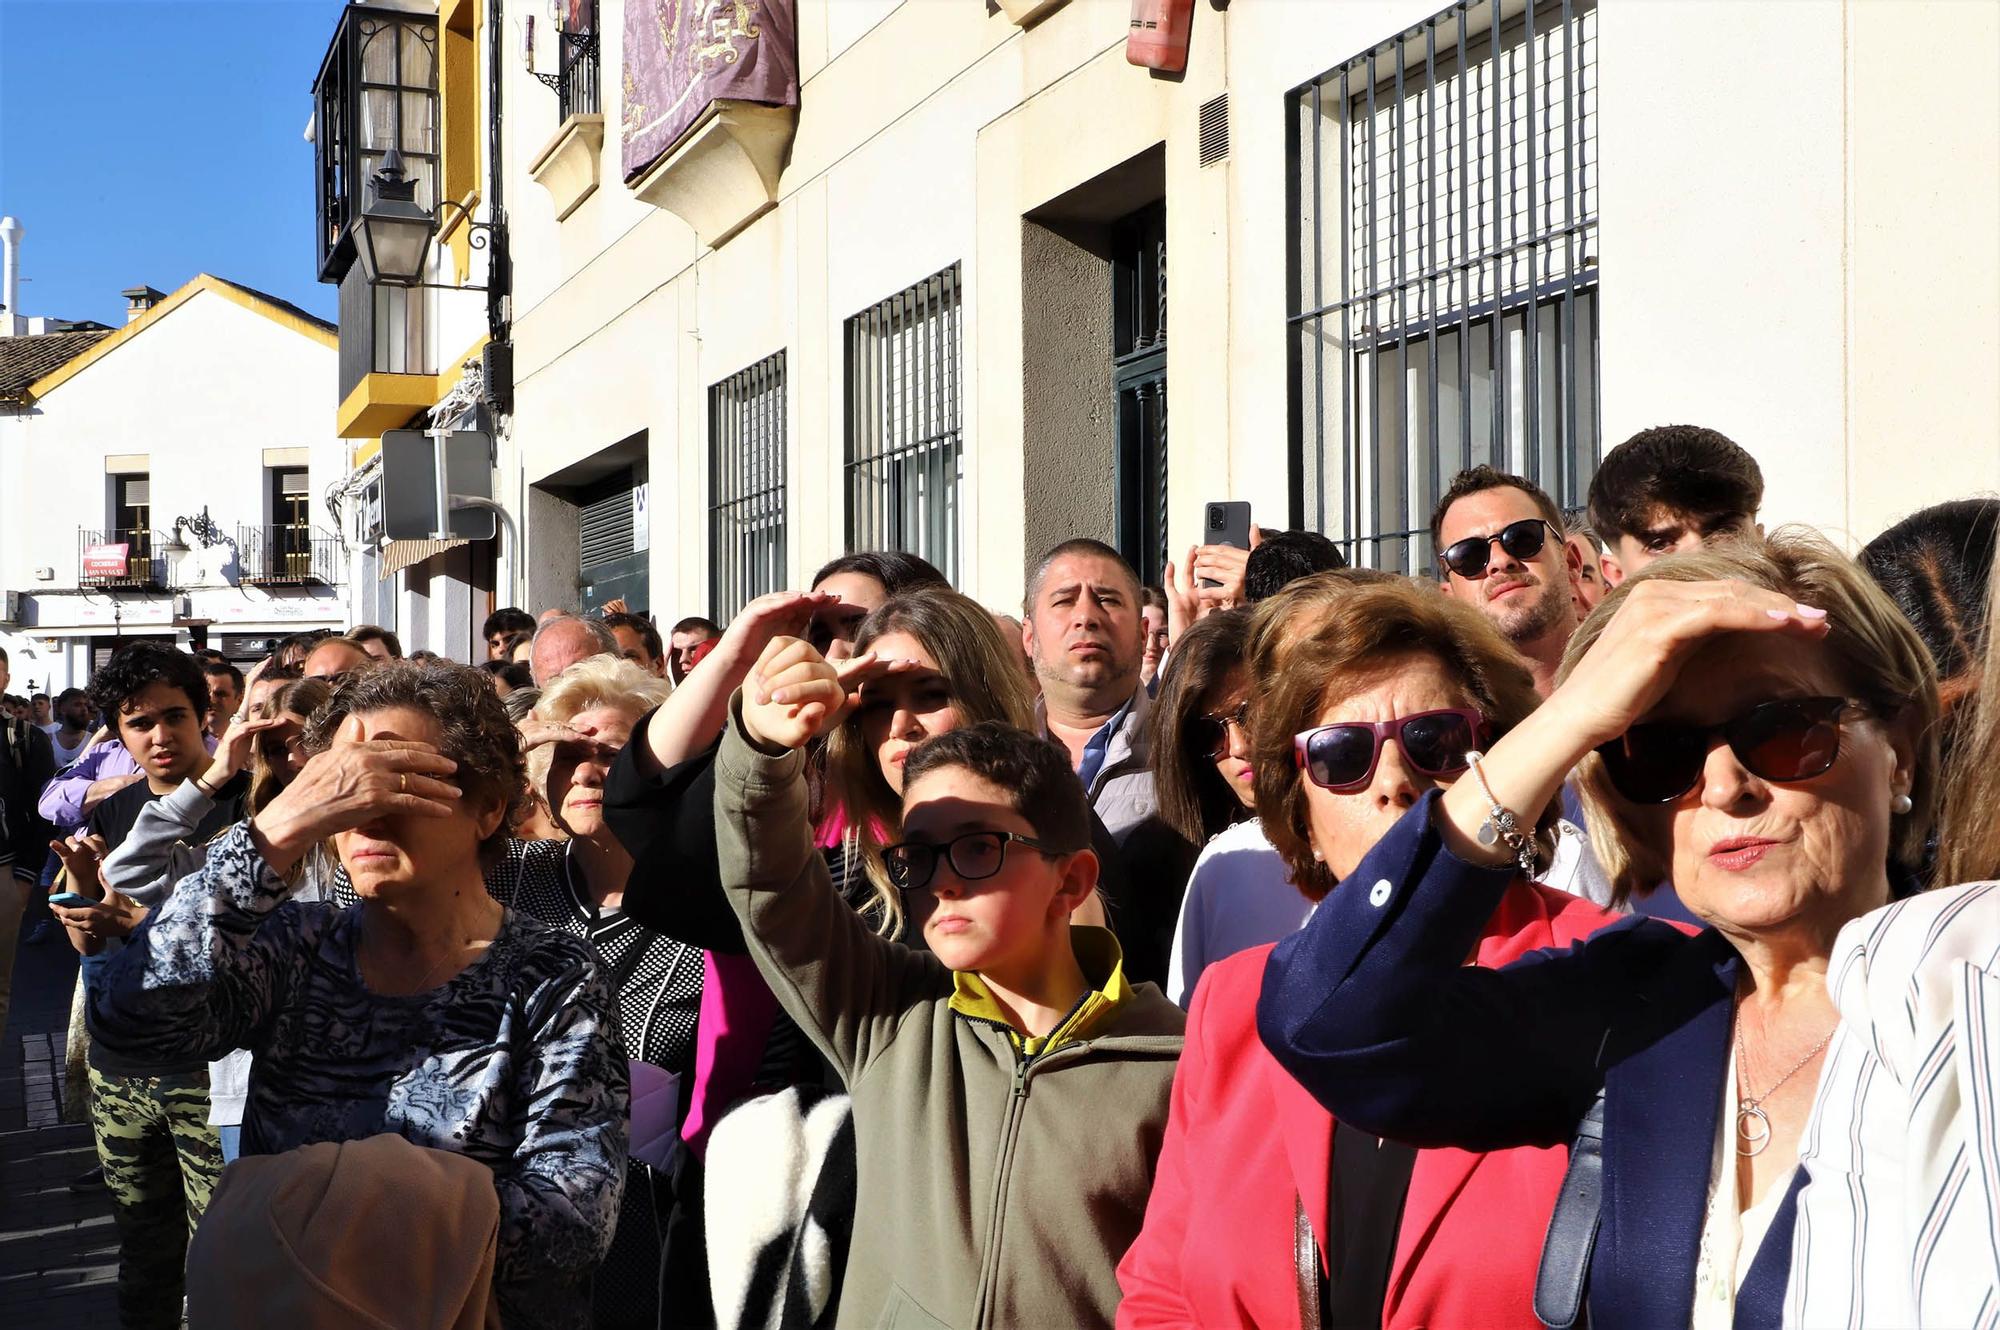 La salida de la popular Borriquita en San Lorenzo, en imágenes